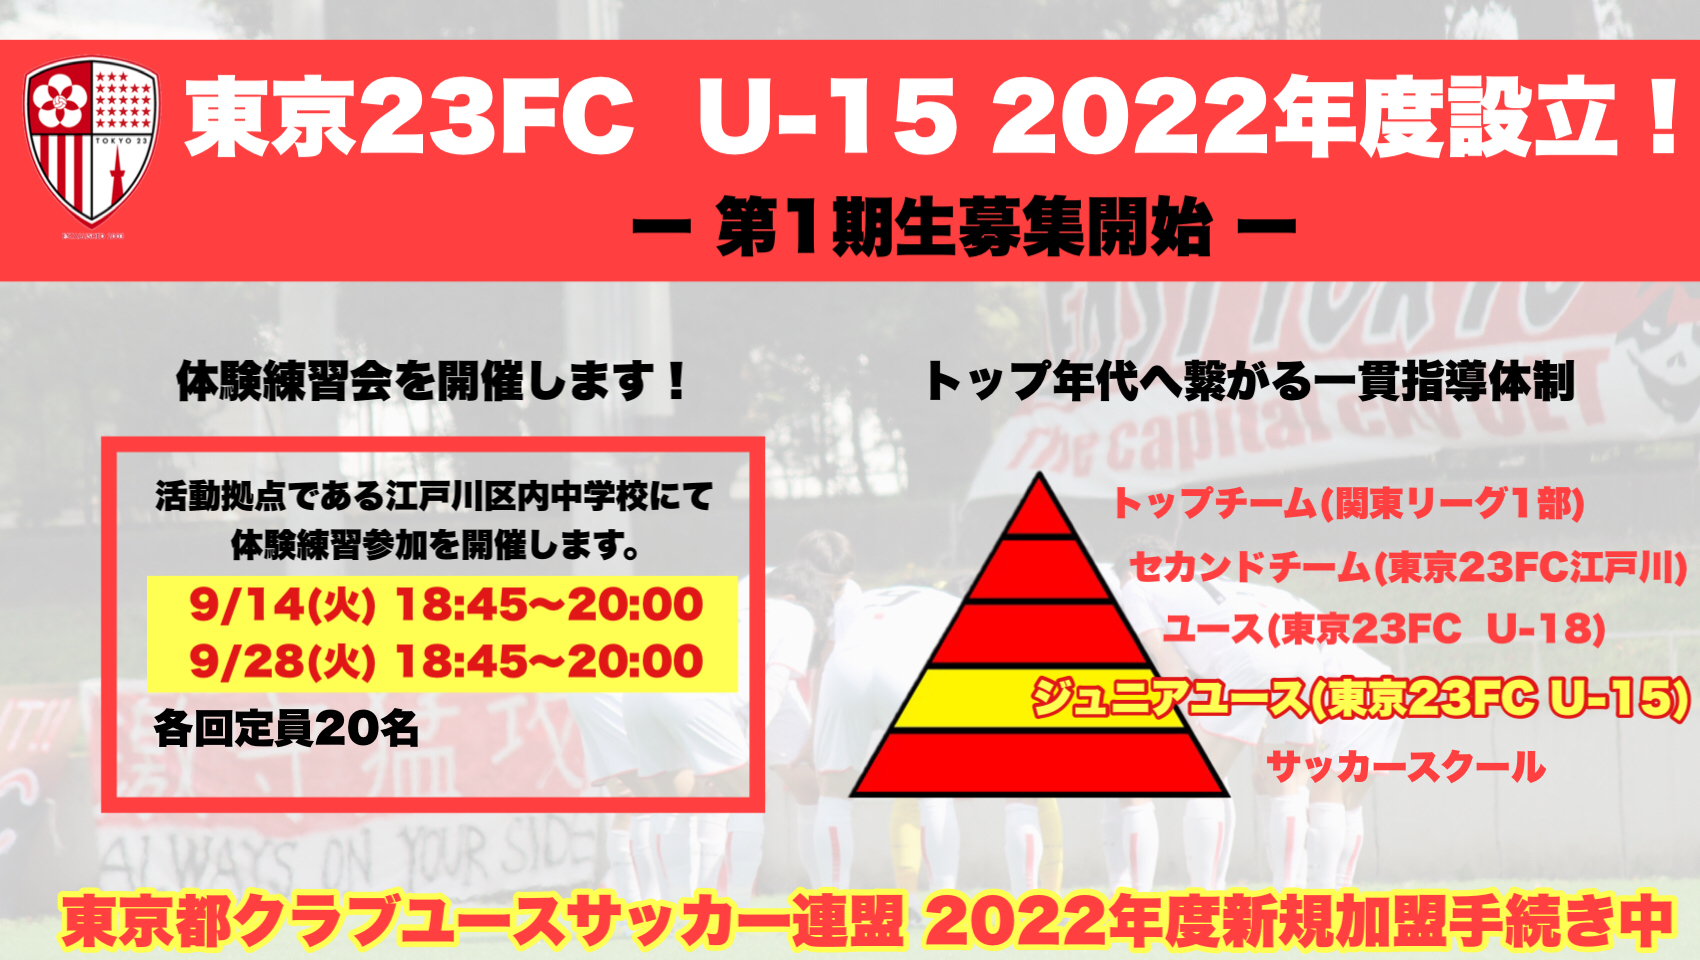 東京23fcオフィシャルサイト 東京23fc 東京23区という地域社会に貢献するフットボールクラブです